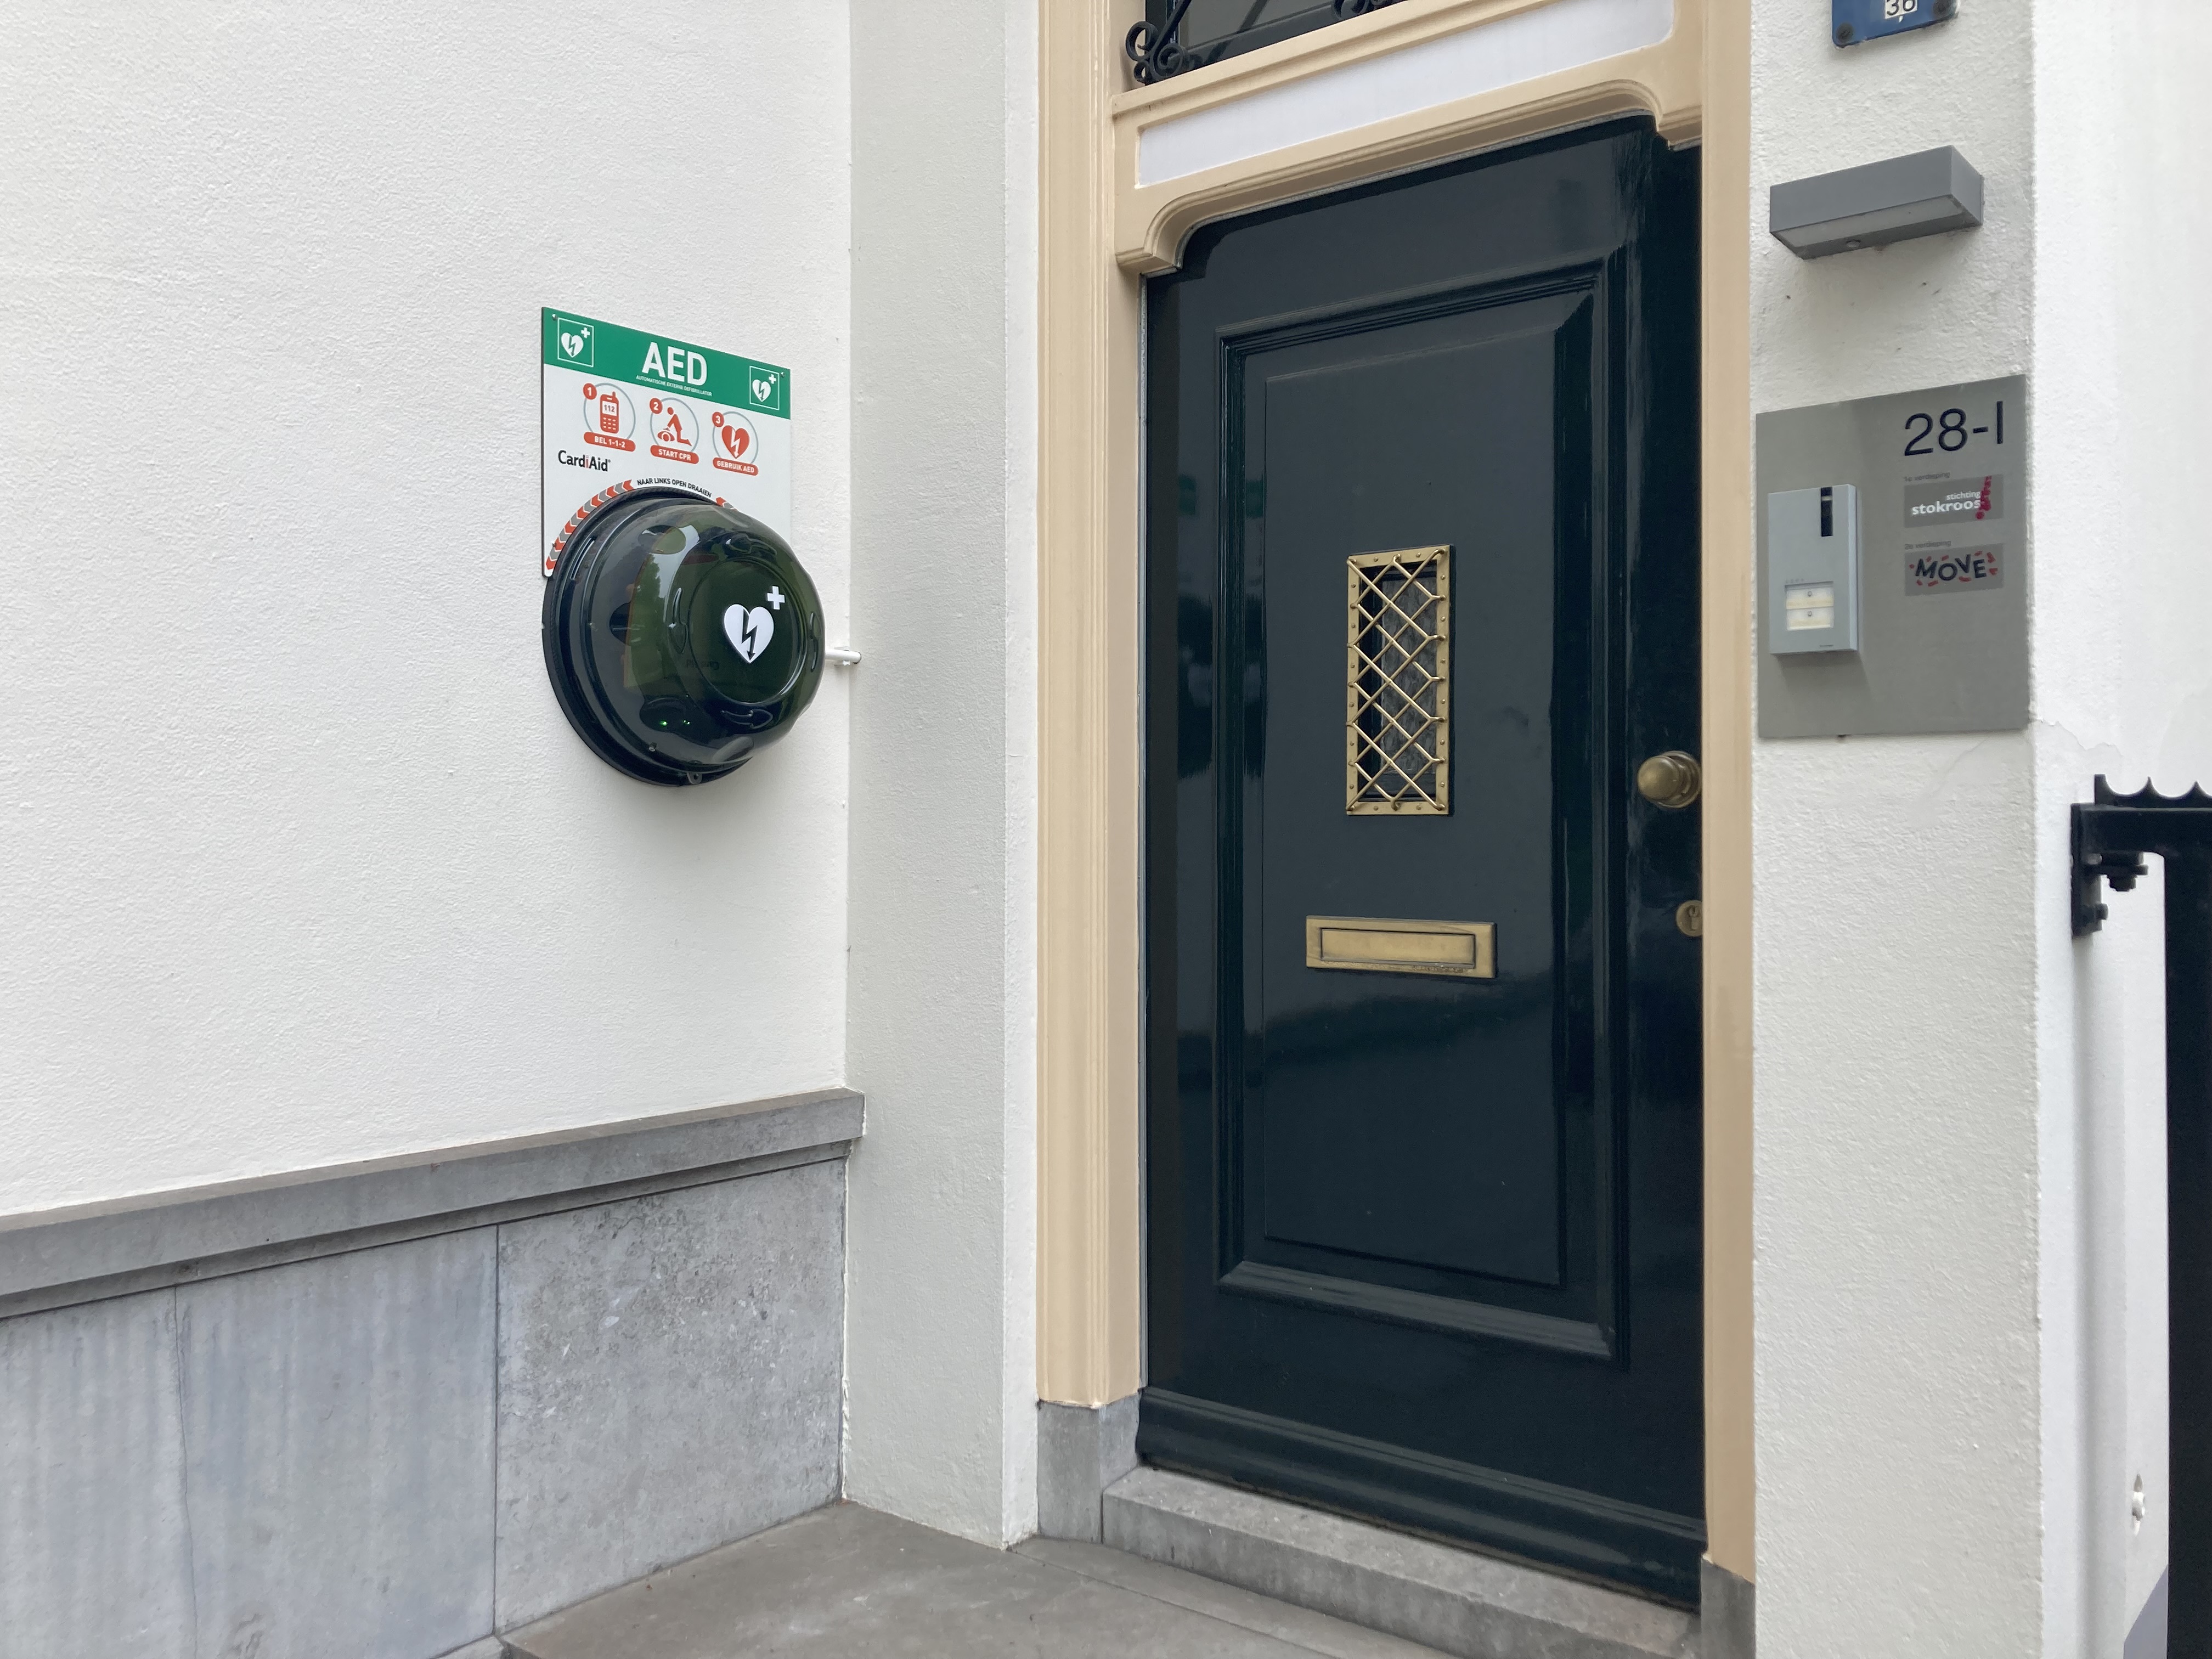 De AED hangt links aan de buitenmuur naast de ingang van het kantoorpand bij nummer 28-1. Op de kast van de AED staat een hart met een bliksemschicht en een plusje. Daarboven hangt een bord met drie pictogrammen hoe de AED gebruikt moet worden